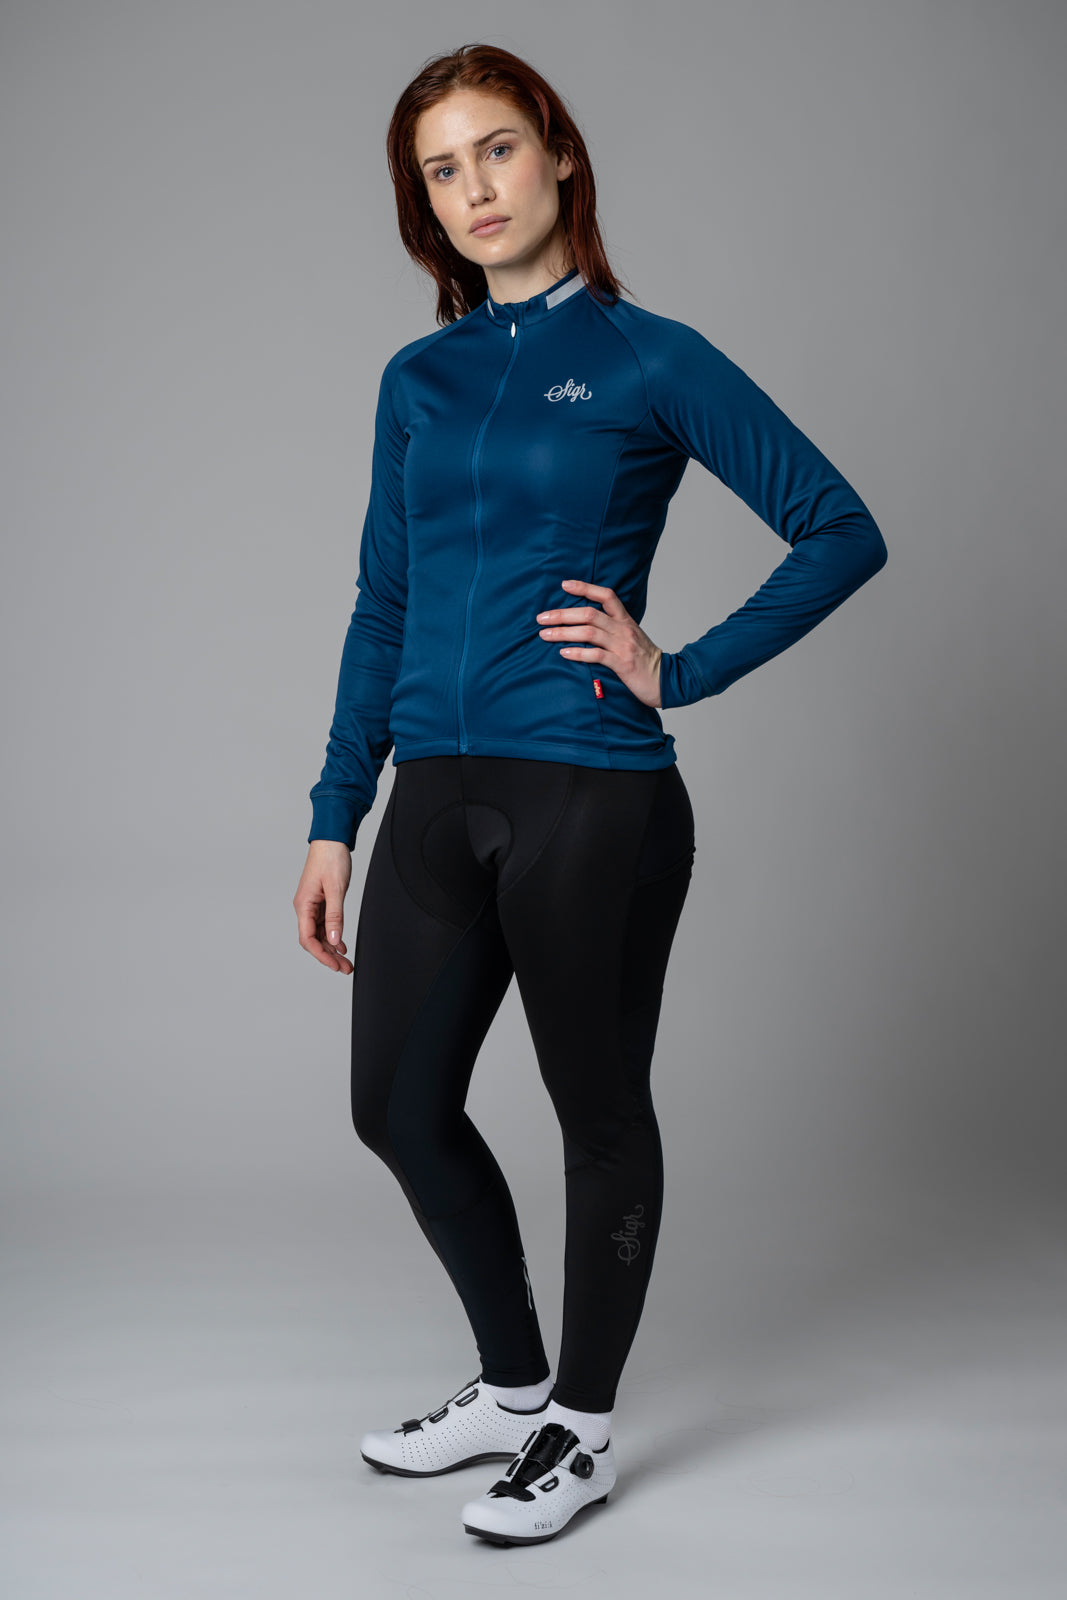 Krokus Blue - Warmer Long Sleeved Jersey for Women